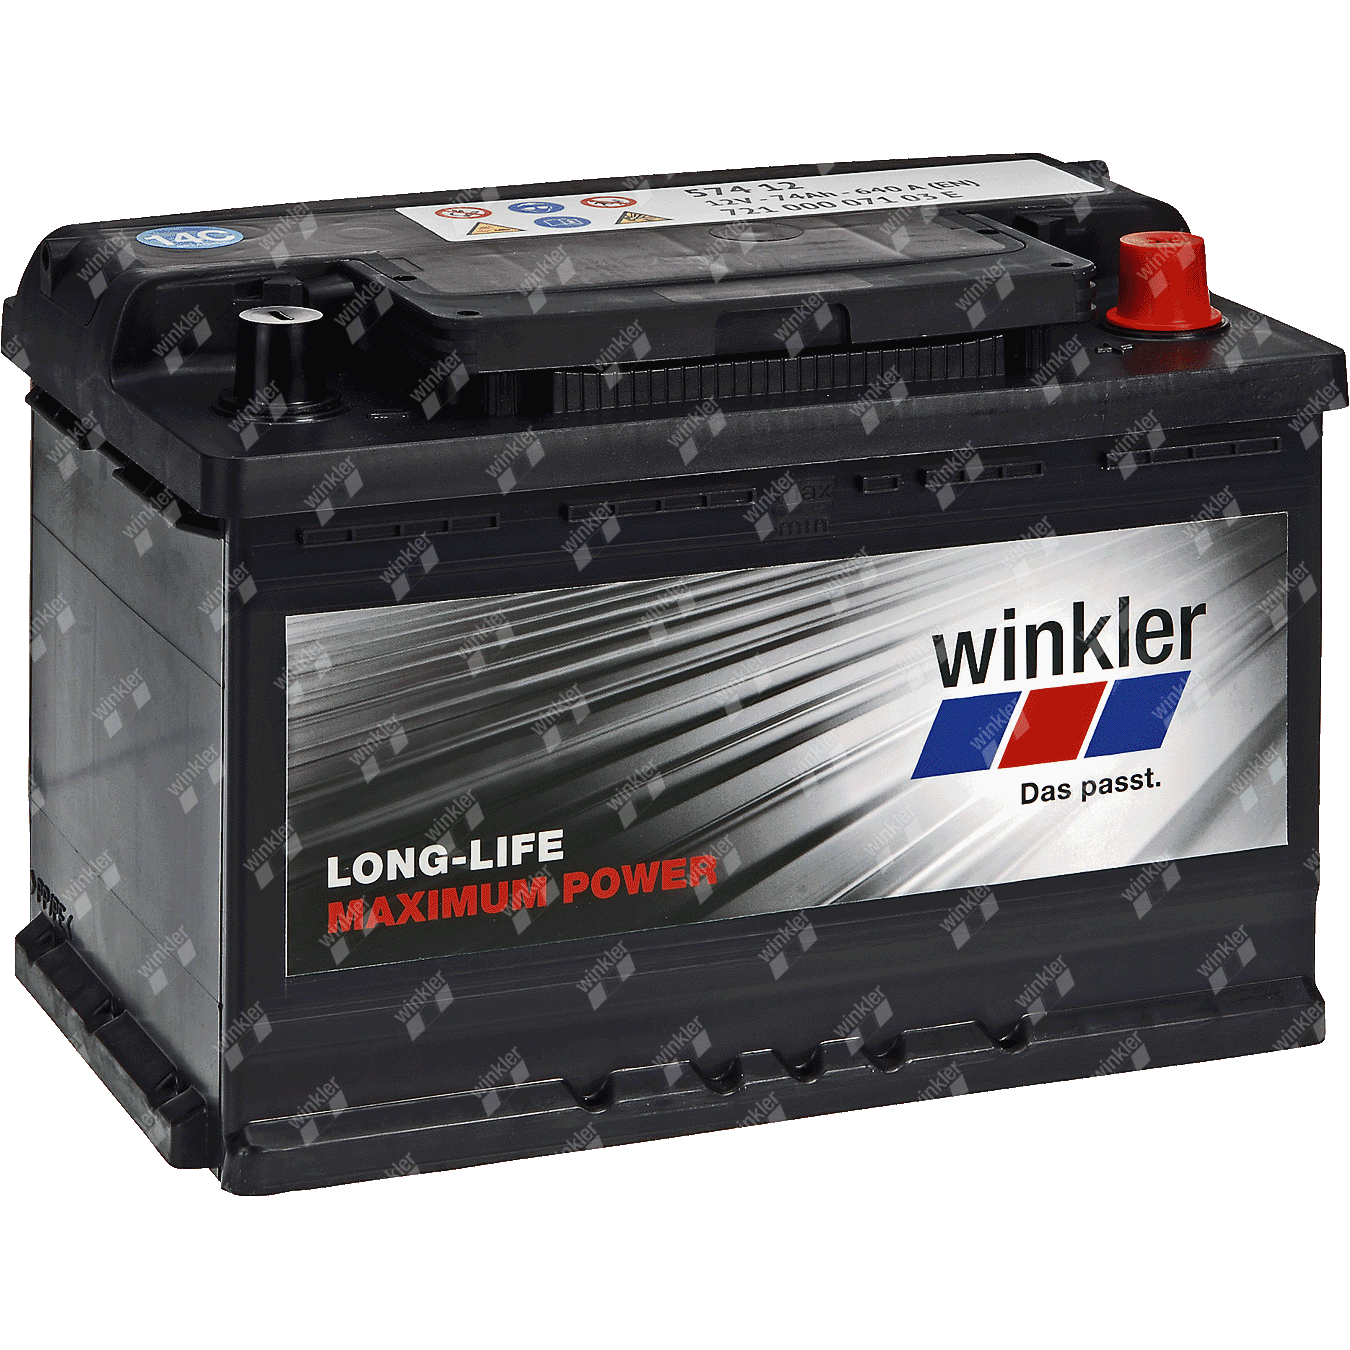 Längere Lebenszeit der Batterie mit dem 'Equalizer' von Winkler -  Krafthand-Truck